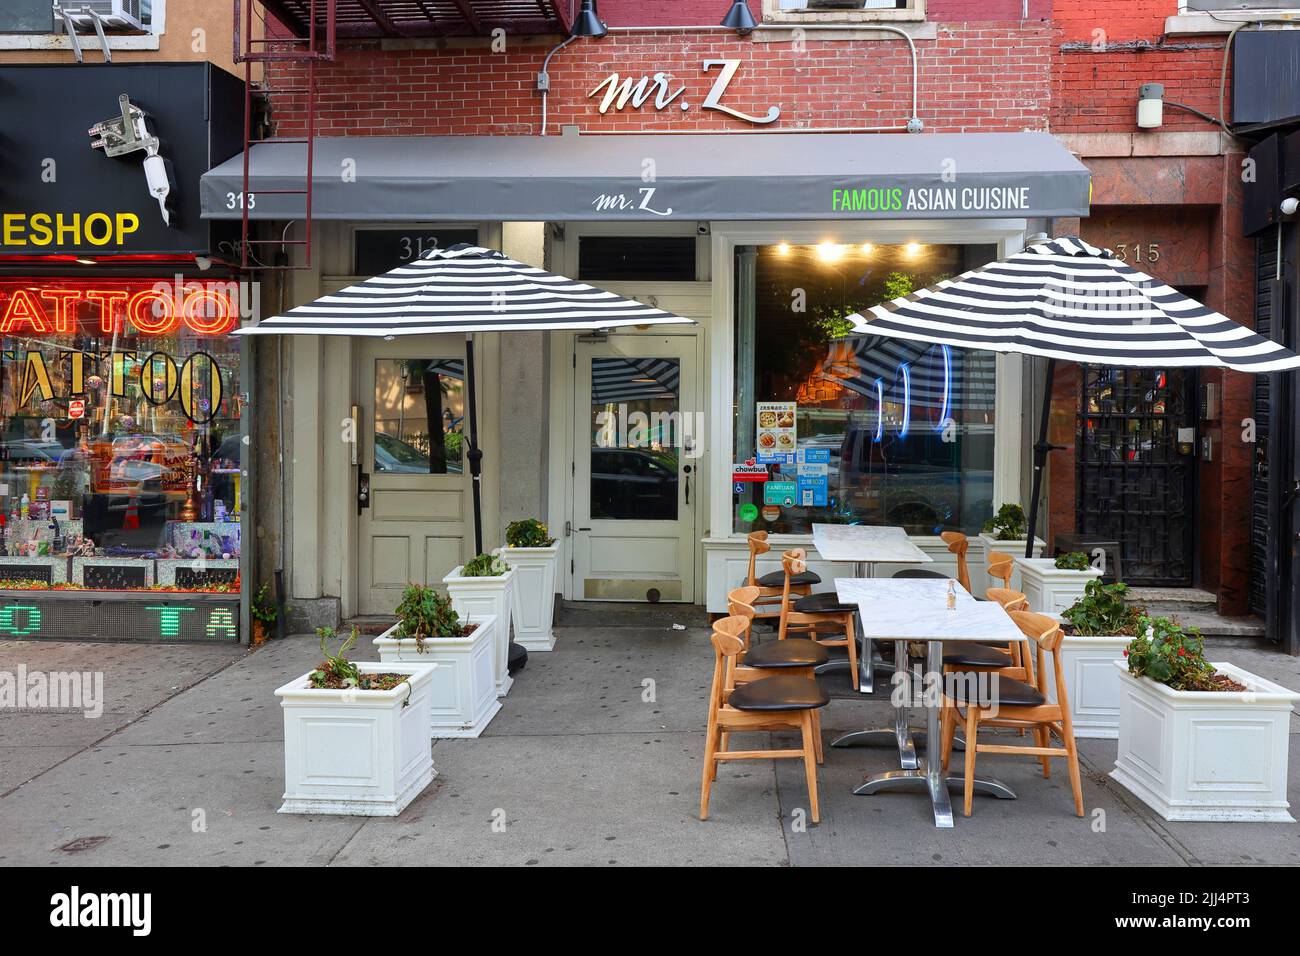 Mr Z Chinese Cuisine, 313 6. Ave, New York, NYC Foto von einem chinesischen Restaurant im Stadtteil Greenwich Village in Manhattan. Stockfoto